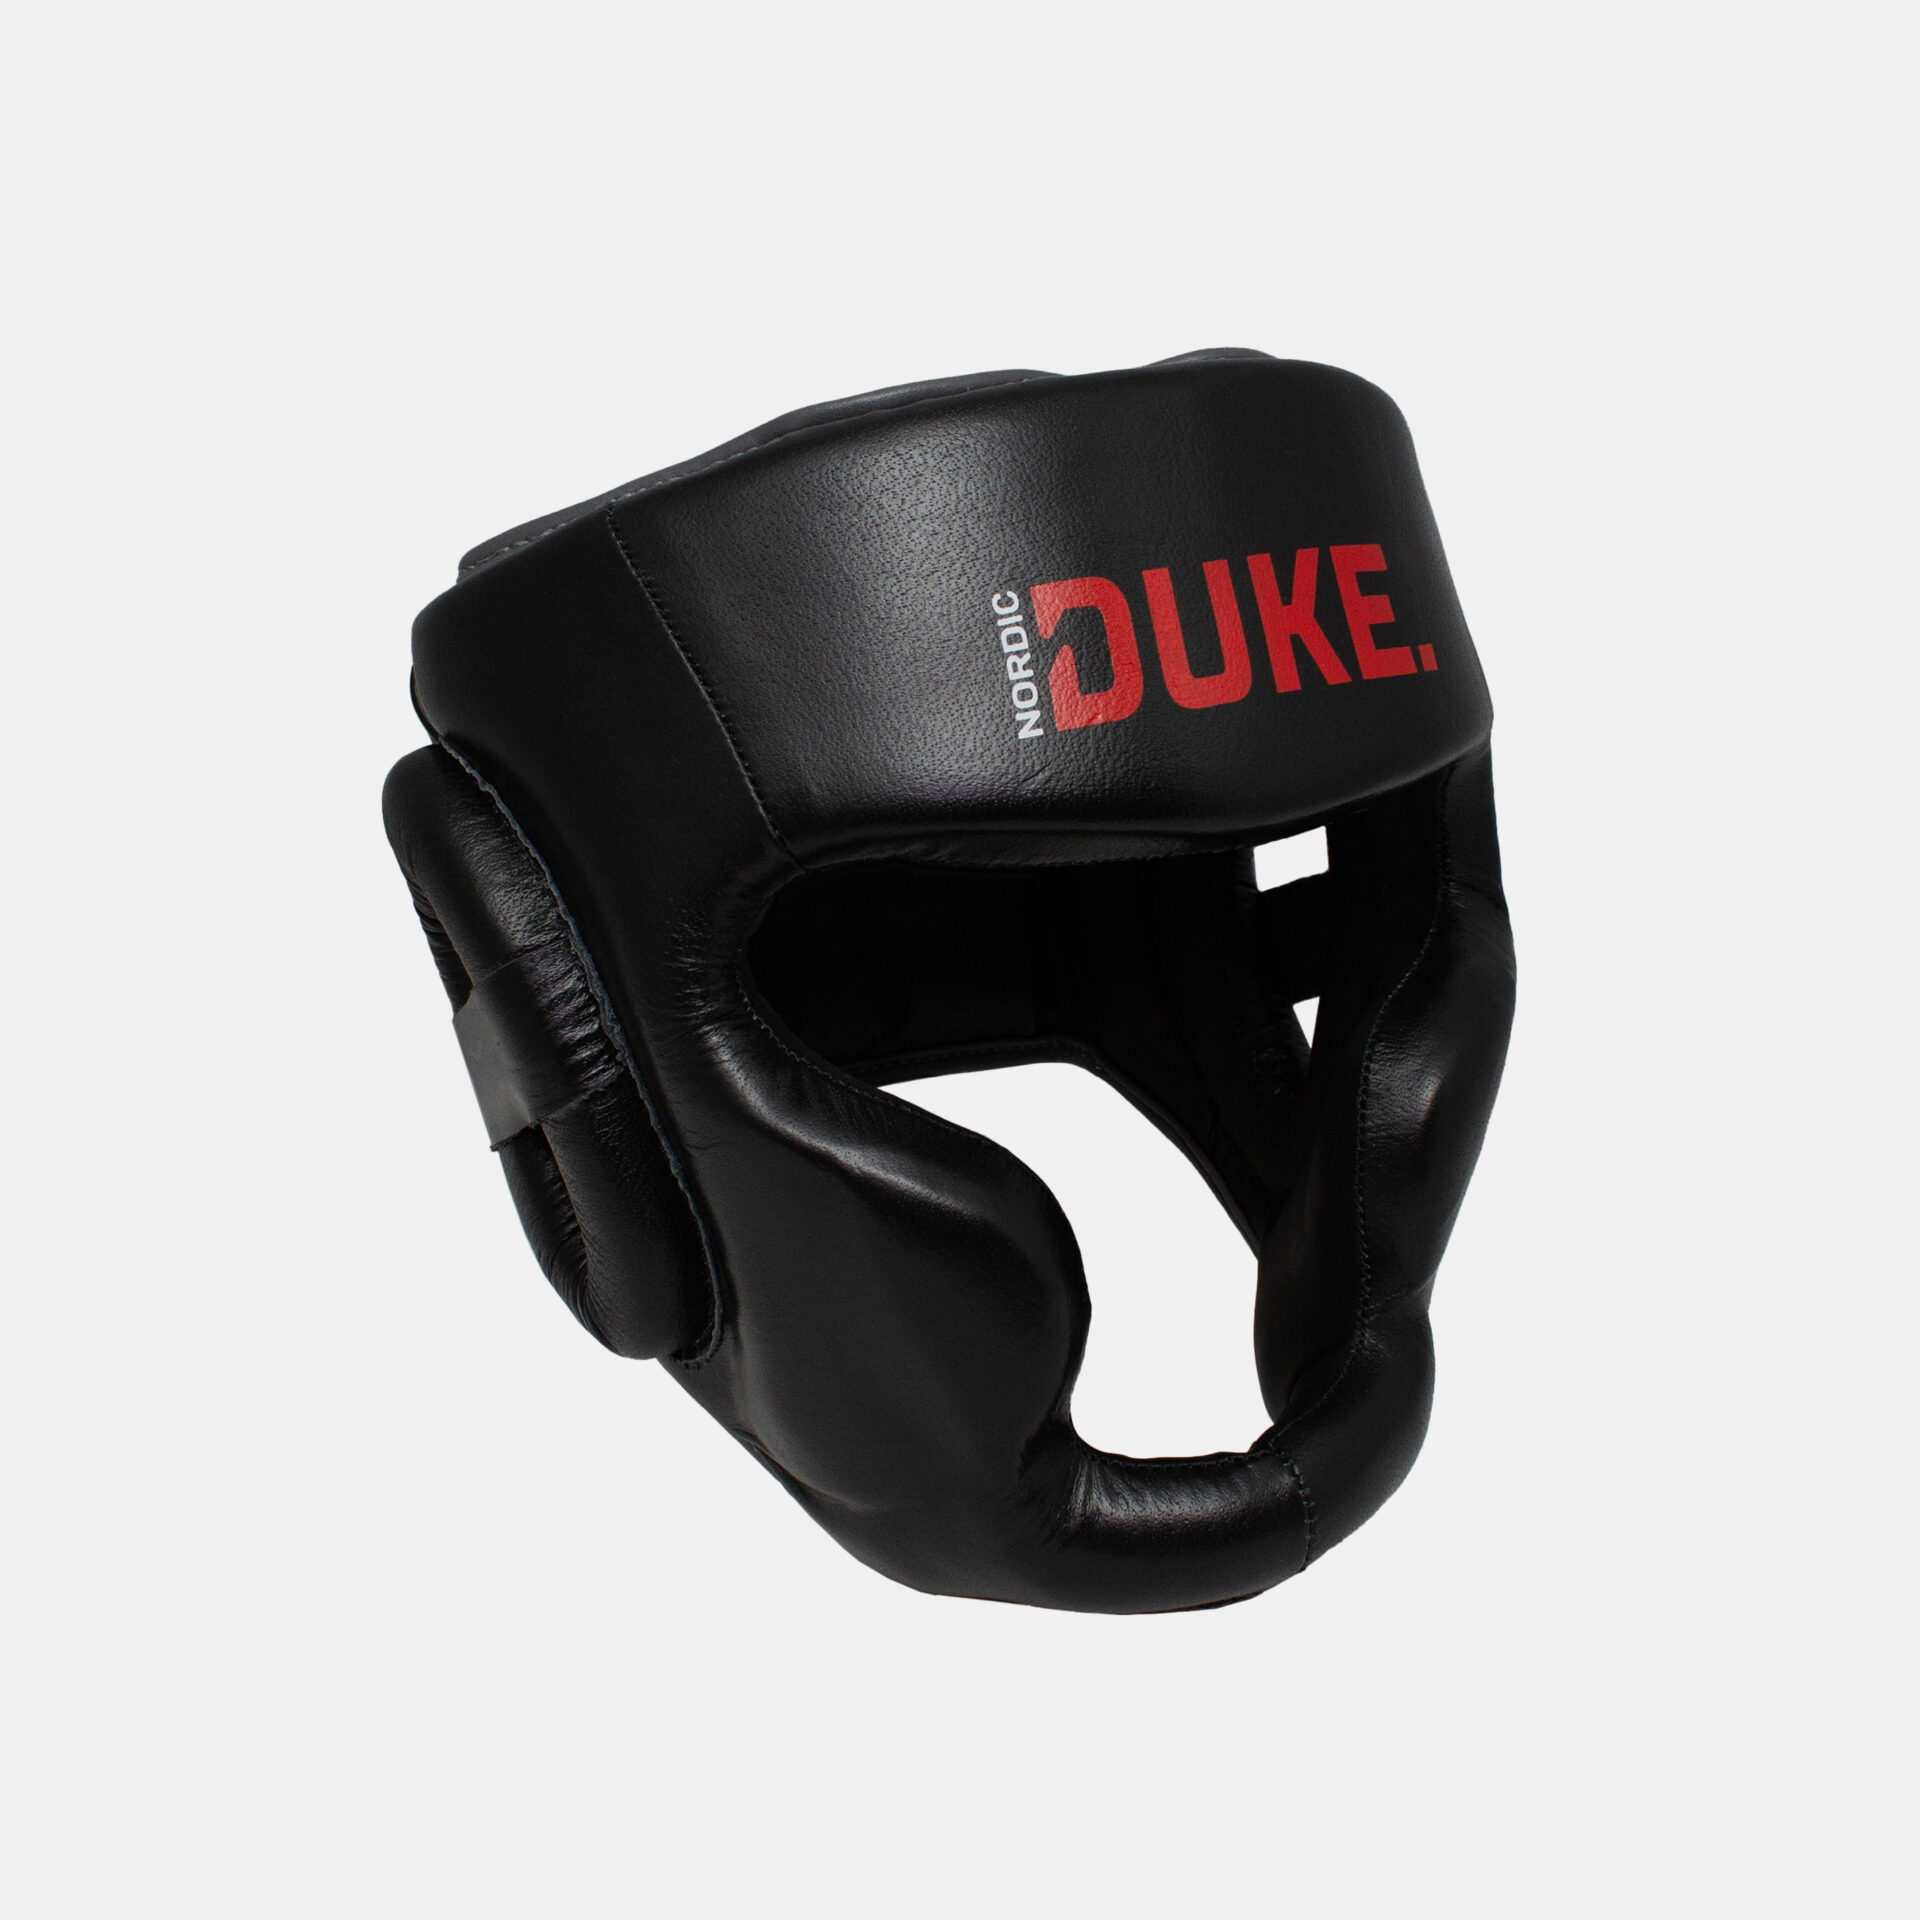 Nordic Duke® pääsuoja nyrkkeilyyn ja kamppailulajeihin.